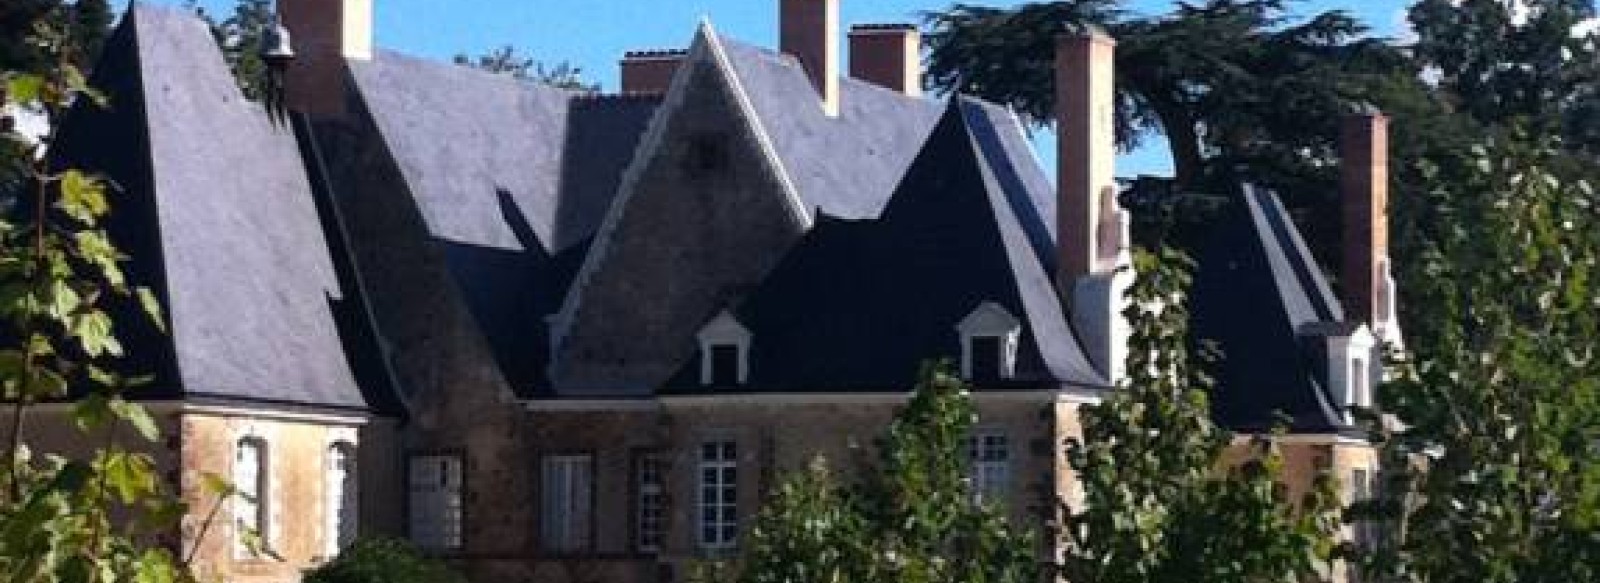 Chateau de Martigne